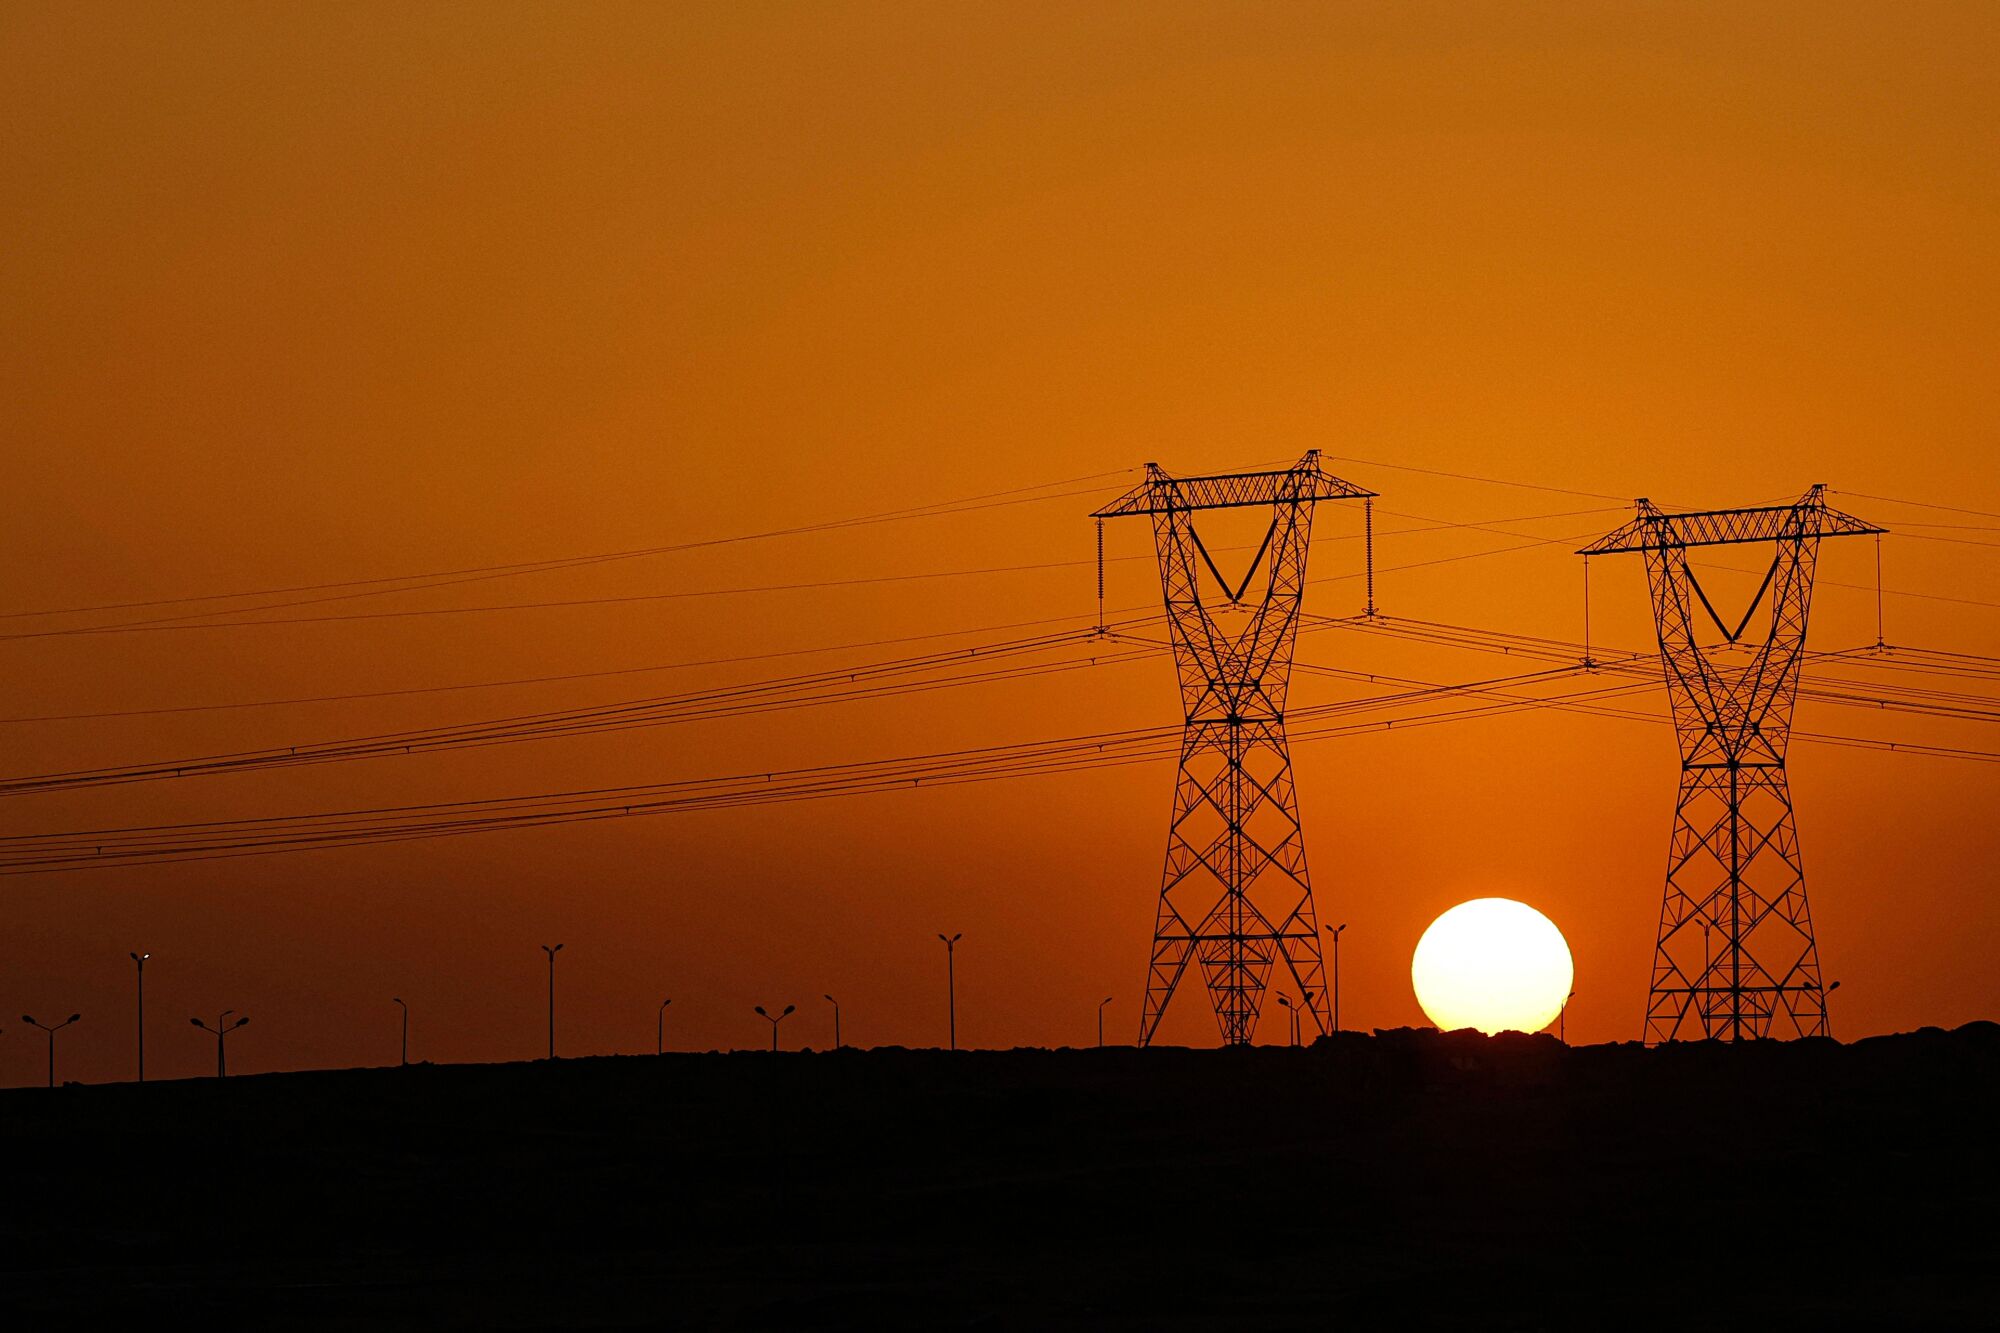 Sun setting behind electricity pylons against orange skies 